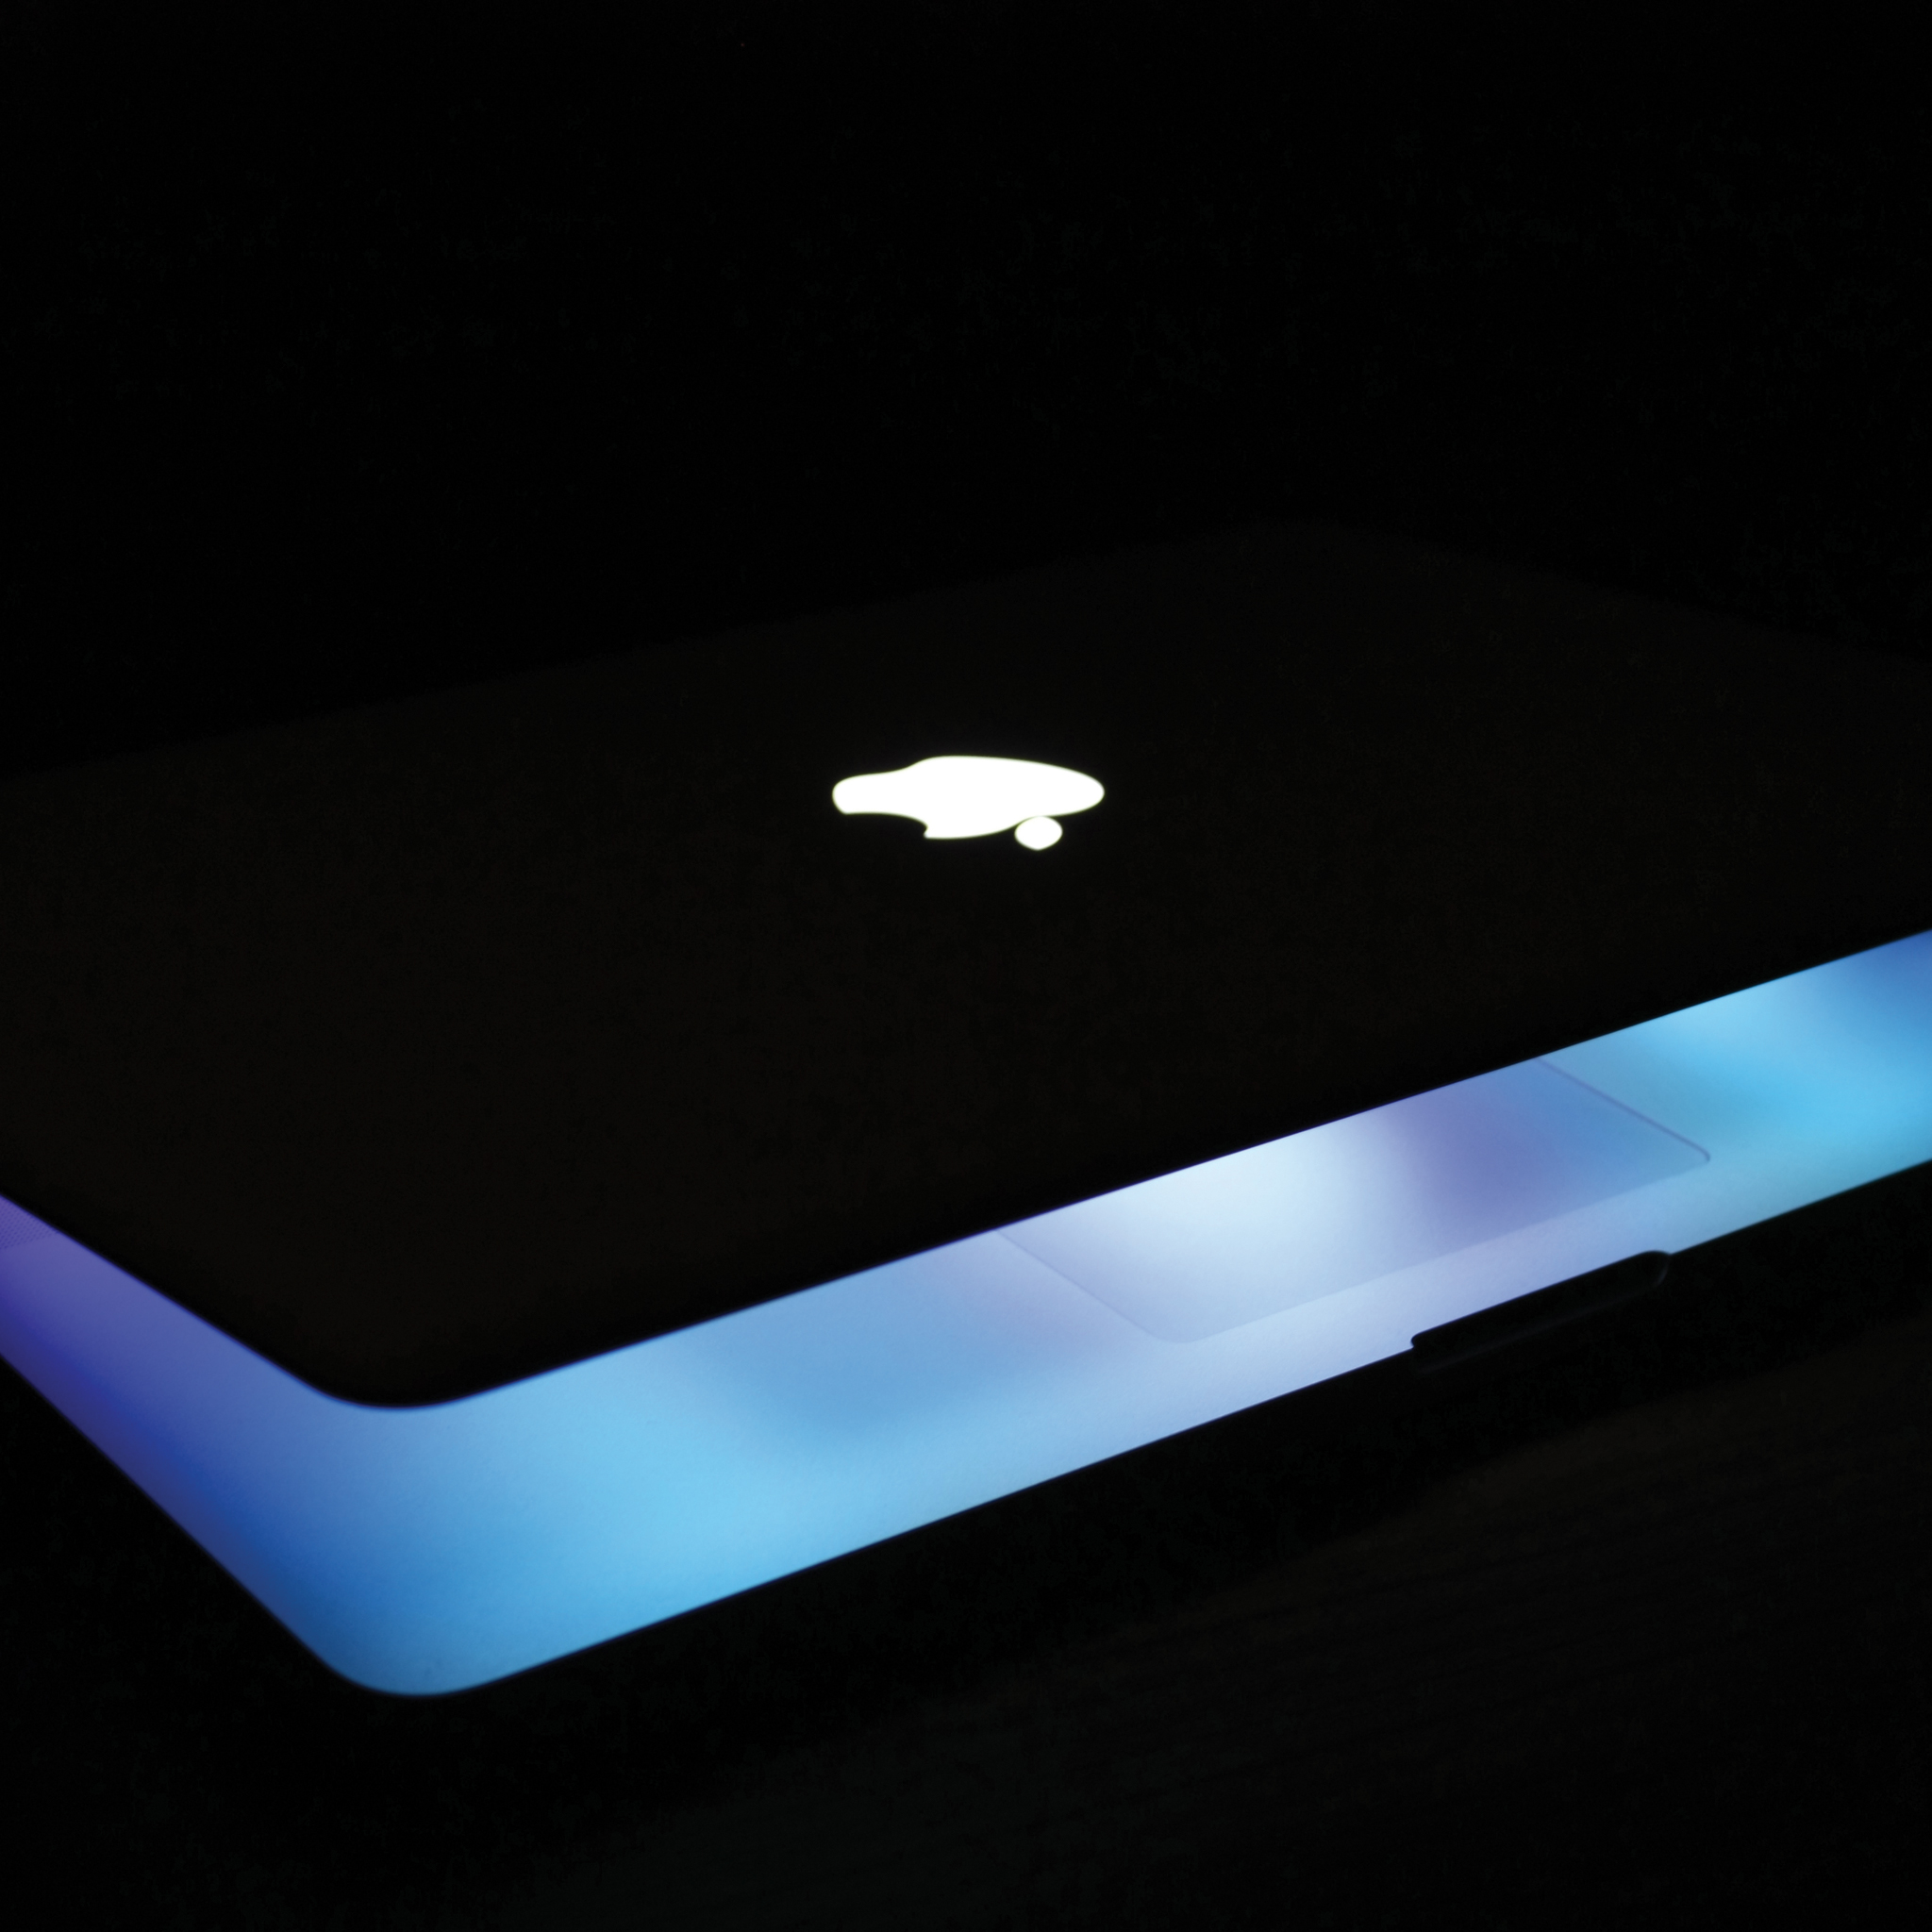 fond d'écran macbook pro,bleu,lumière,éclairage,gadget,la technologie